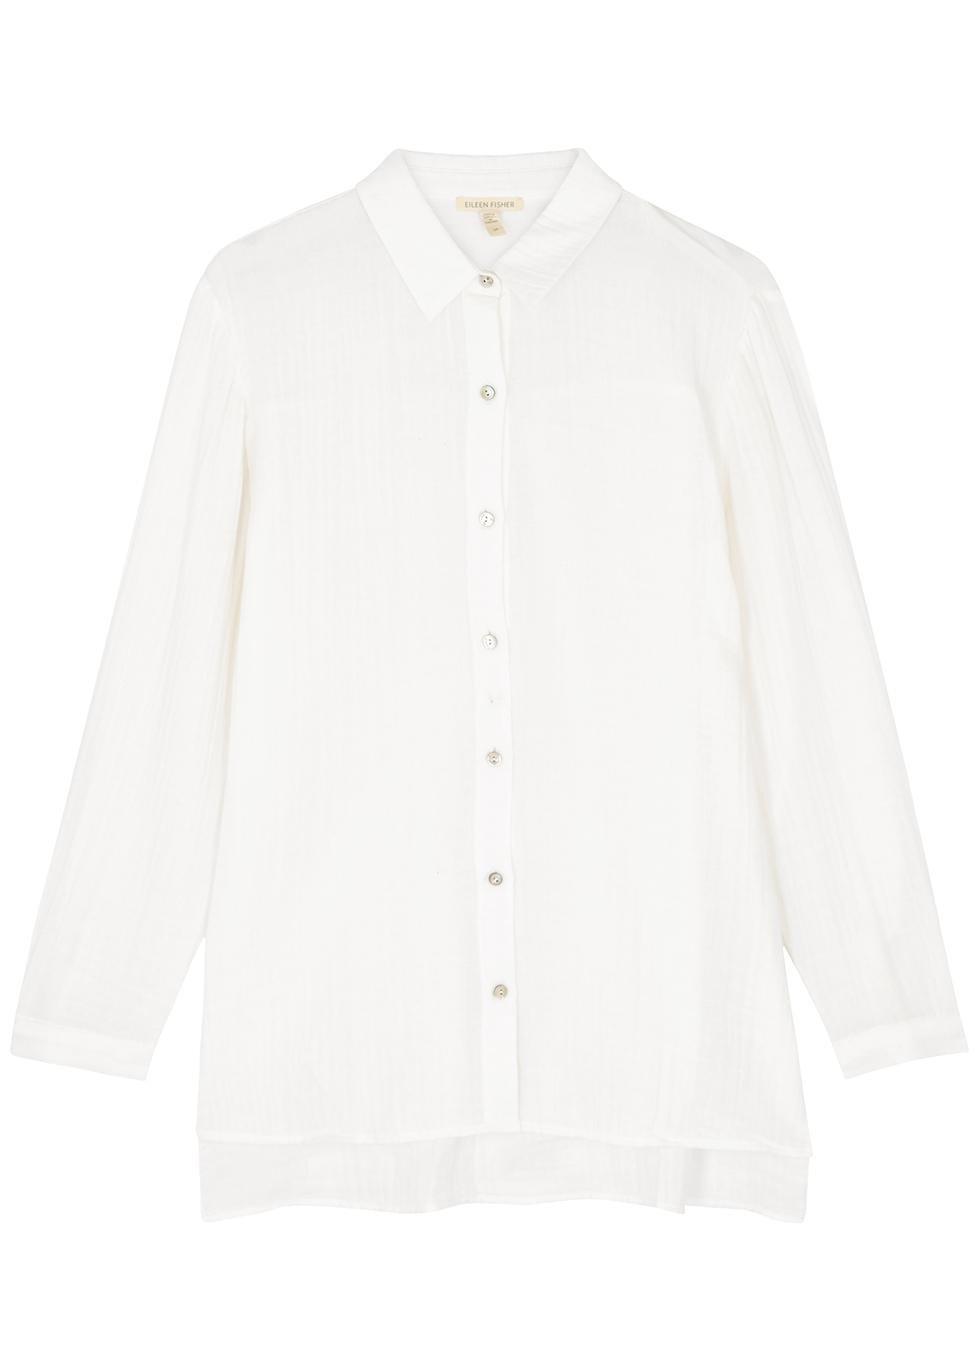 Cotton-gauze shirt by EILEEN FISHER